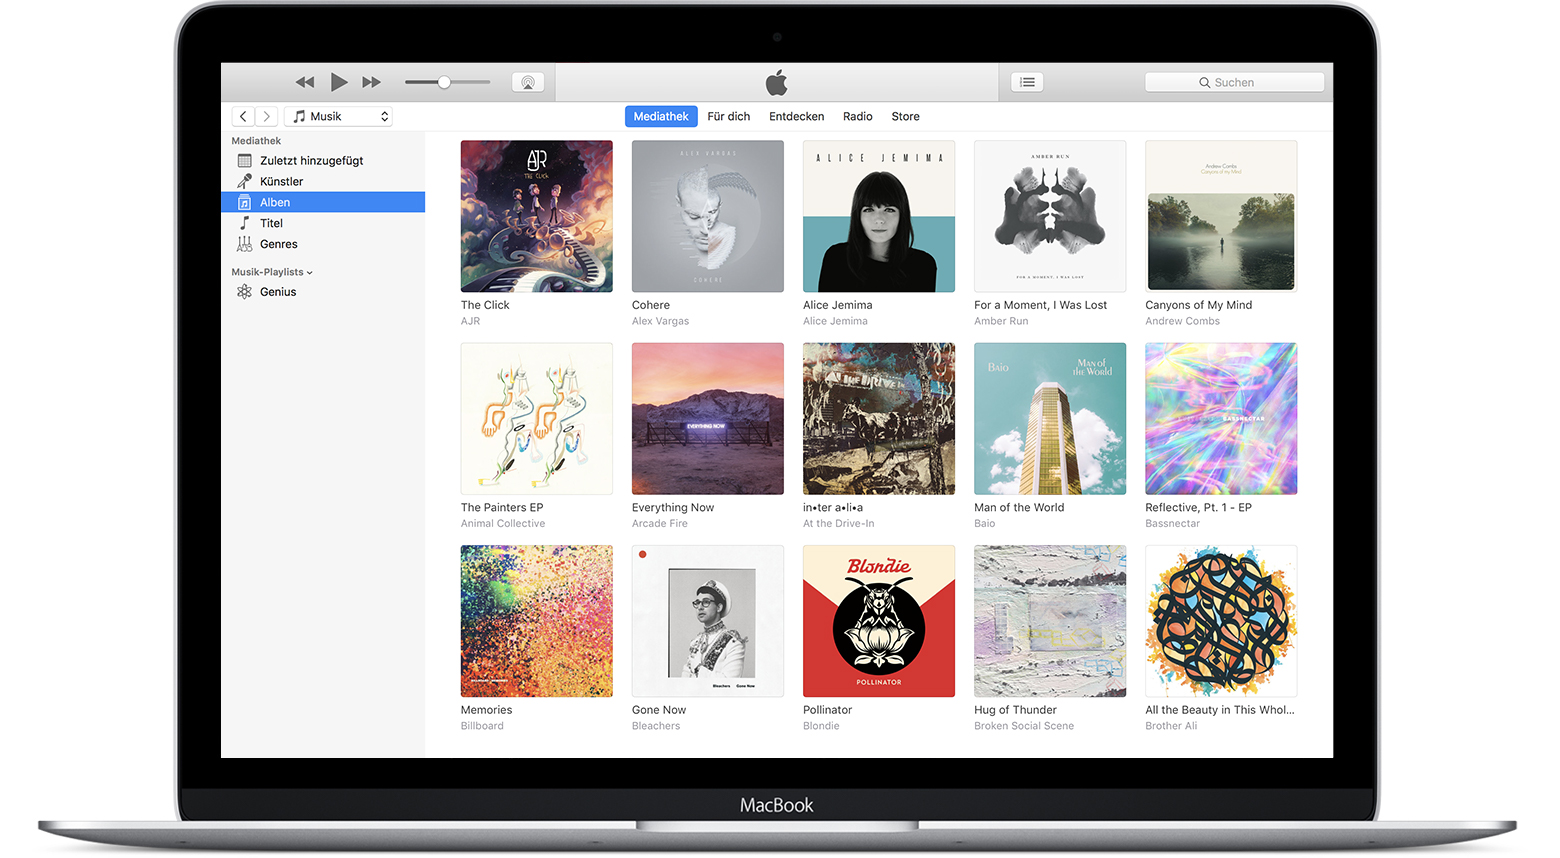 apple itunes download update version